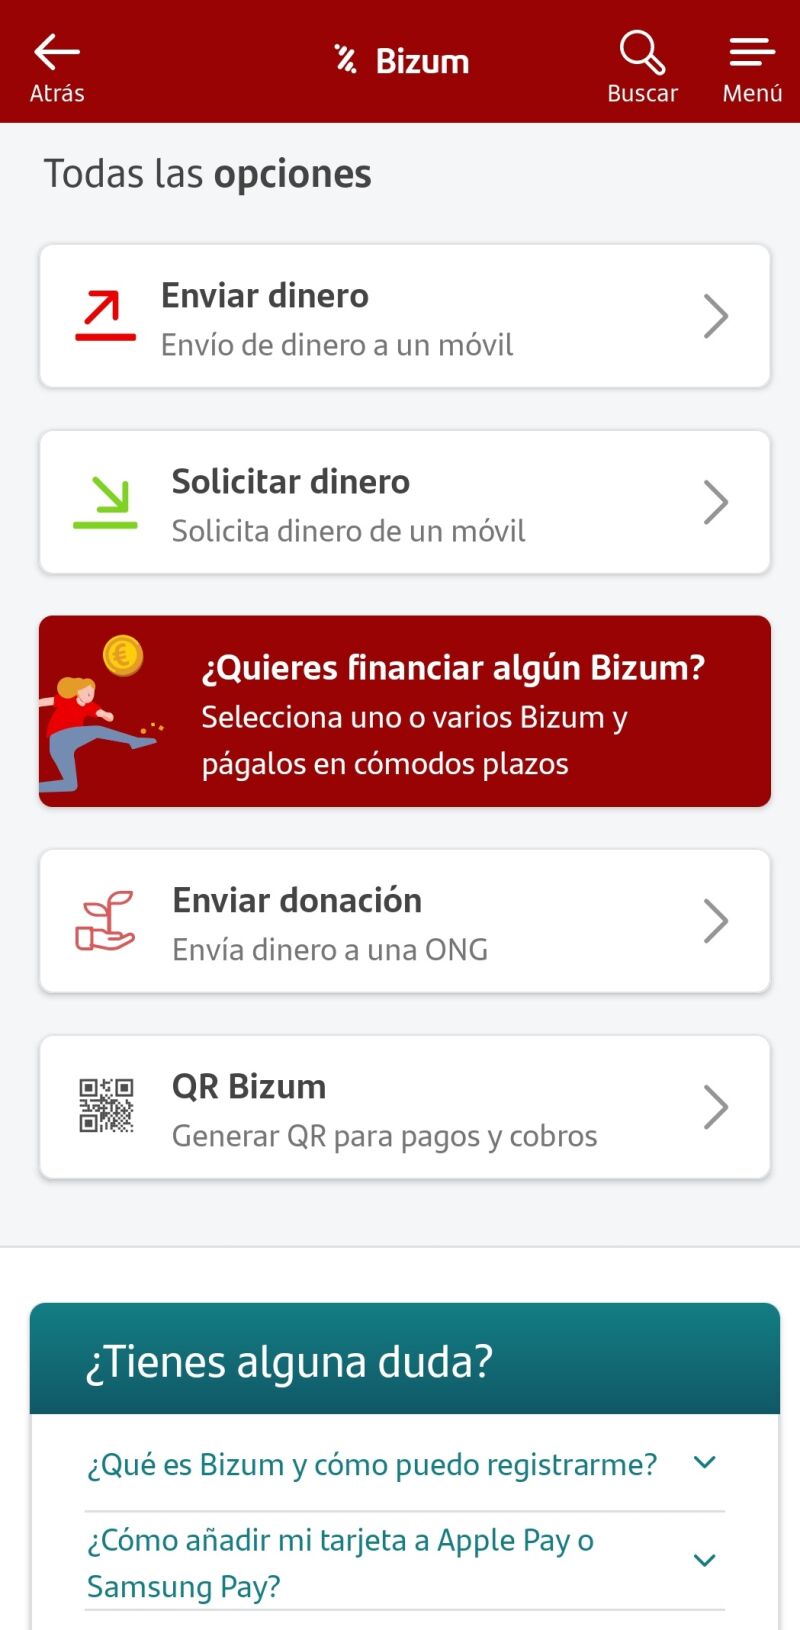 En Bizum también se puede solicitar dinero a otra persona además de enviarlo